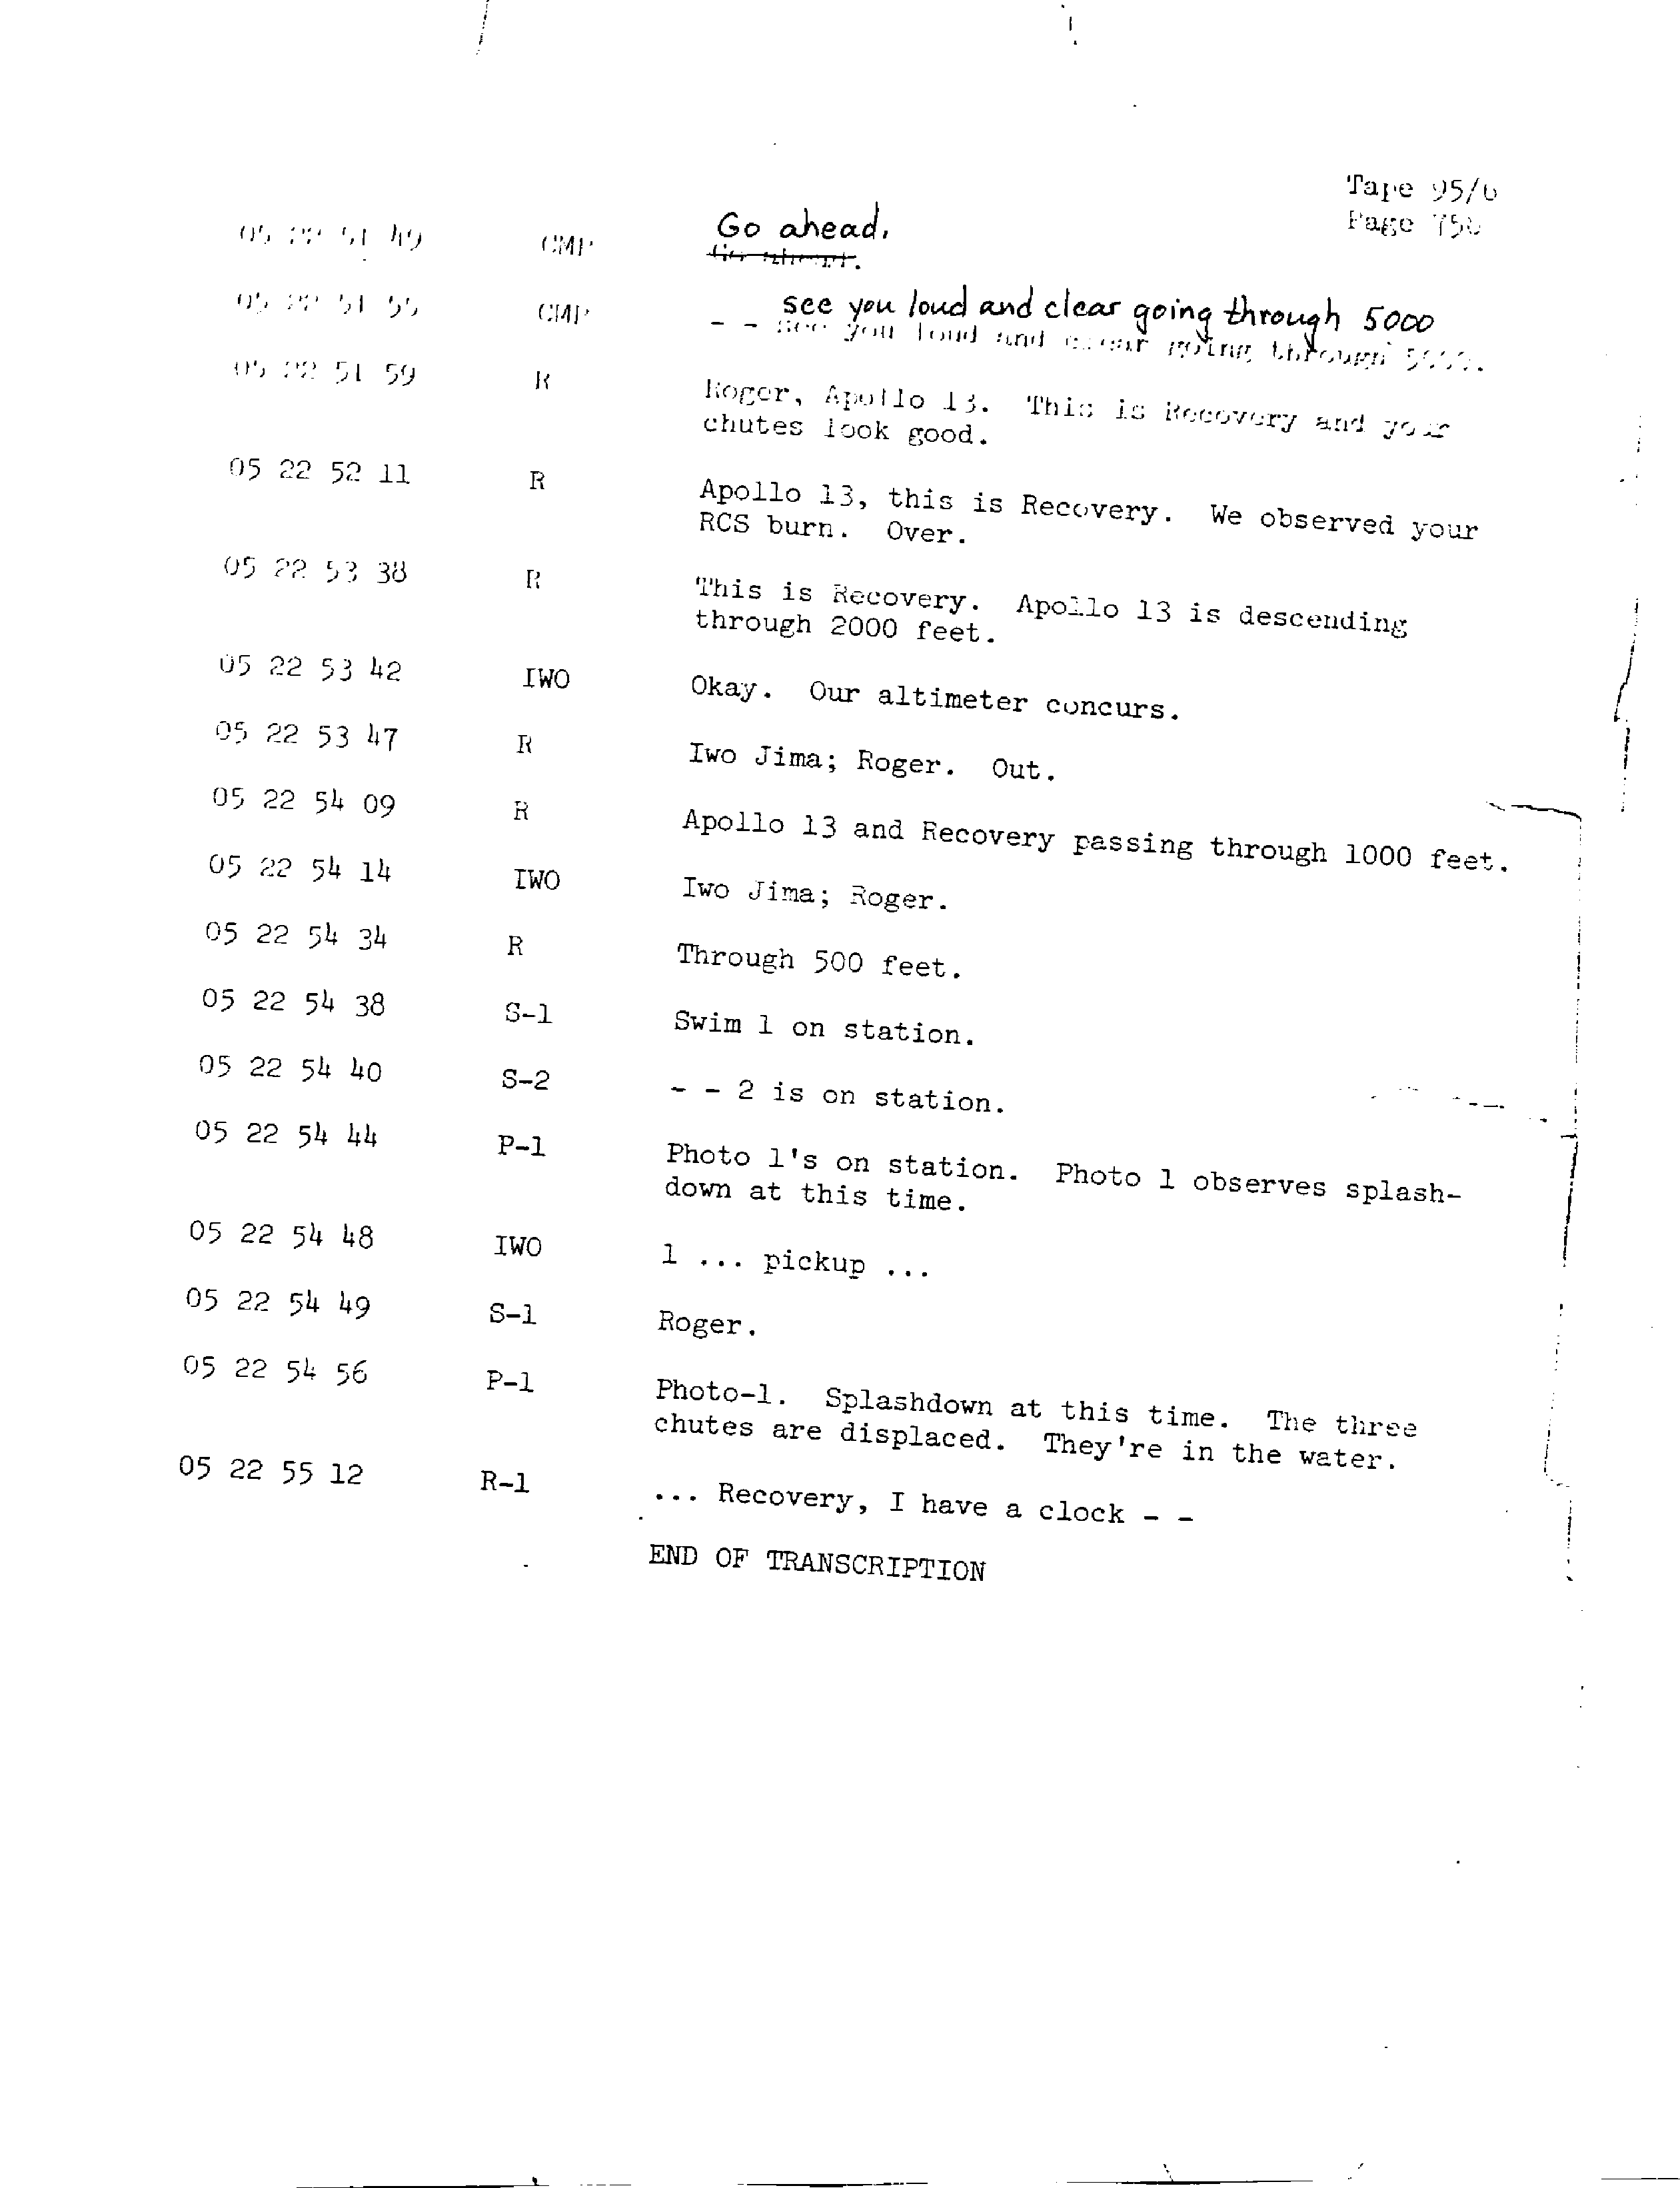 Page 765 of Apollo 13’s original transcript